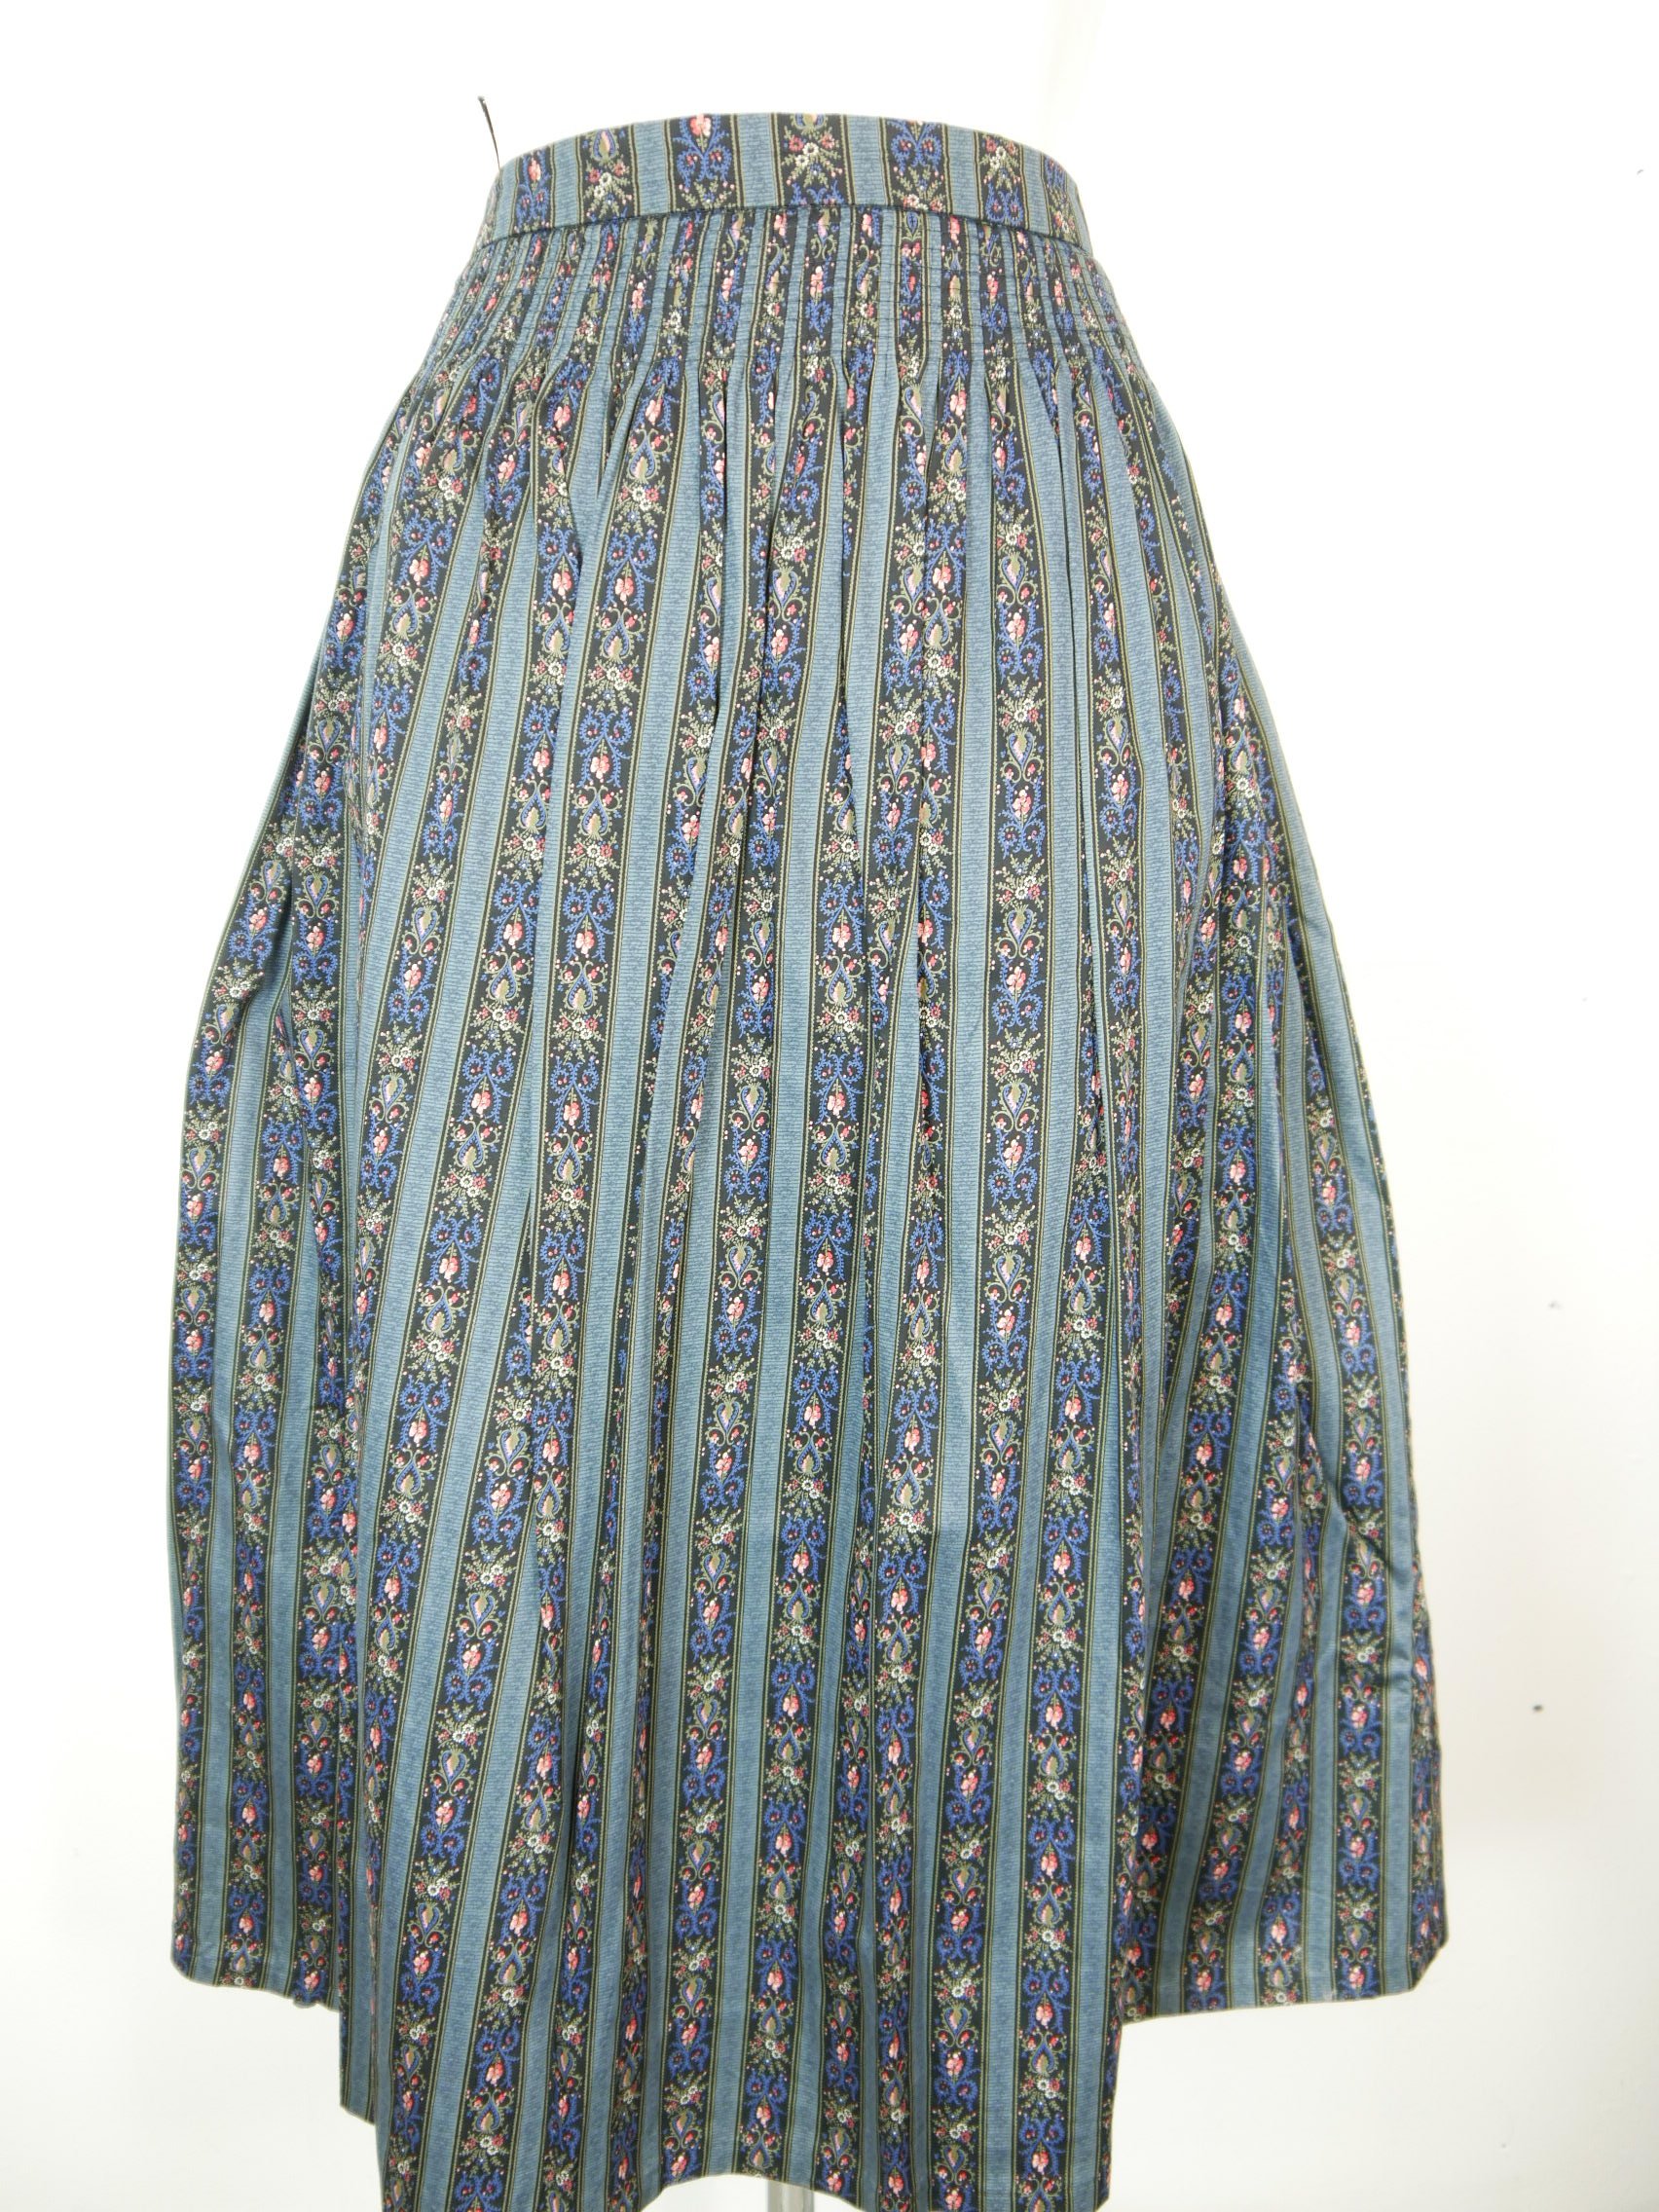 Original Alps multicolored flower tendrils smart women's traditional skirt